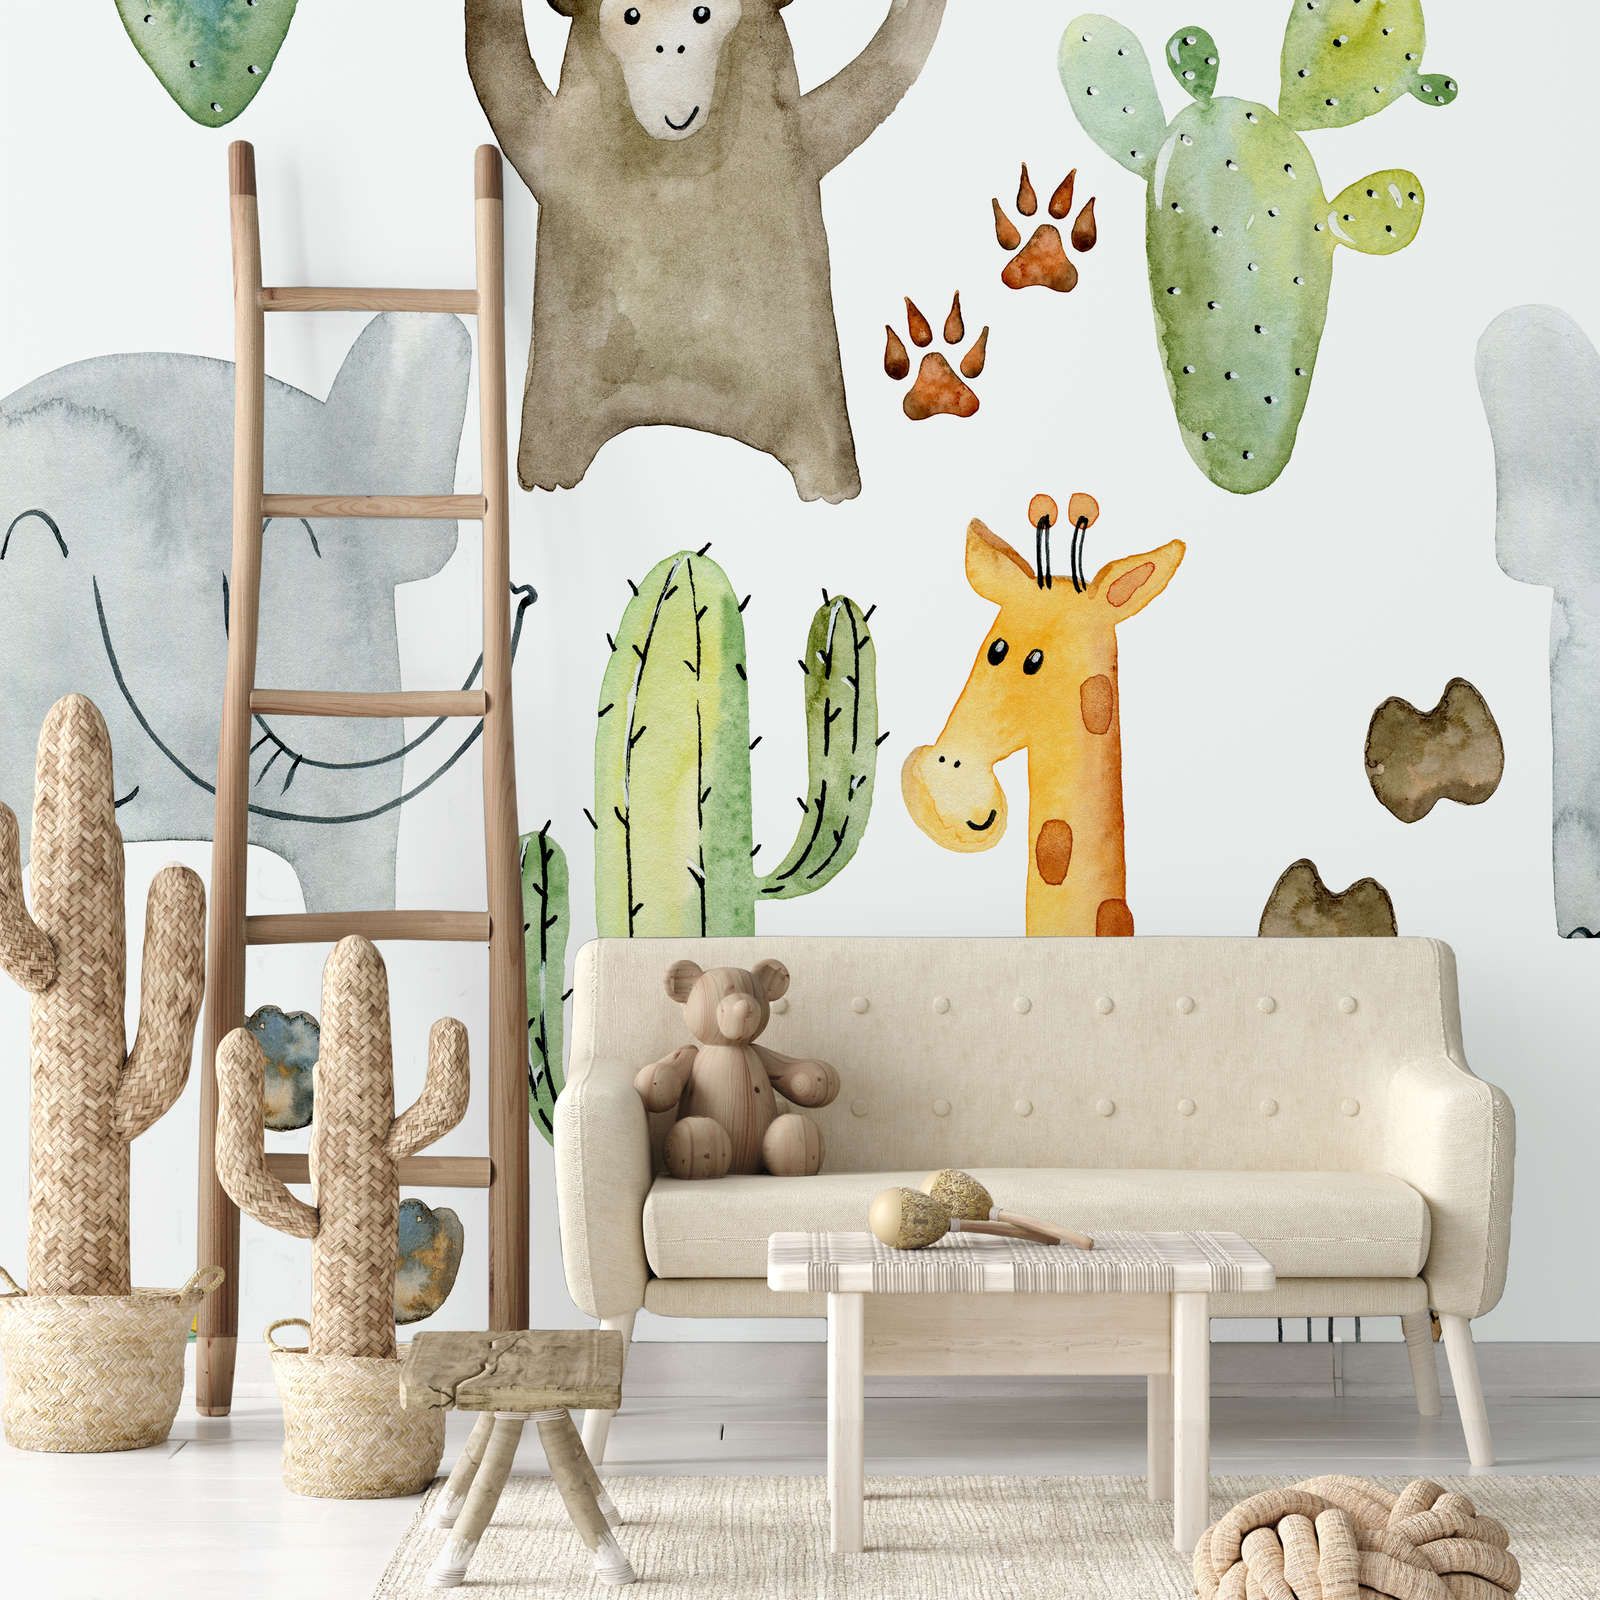             Papel pintado Animales y cactus - Material sin tejer liso y ligeramente brillante
        